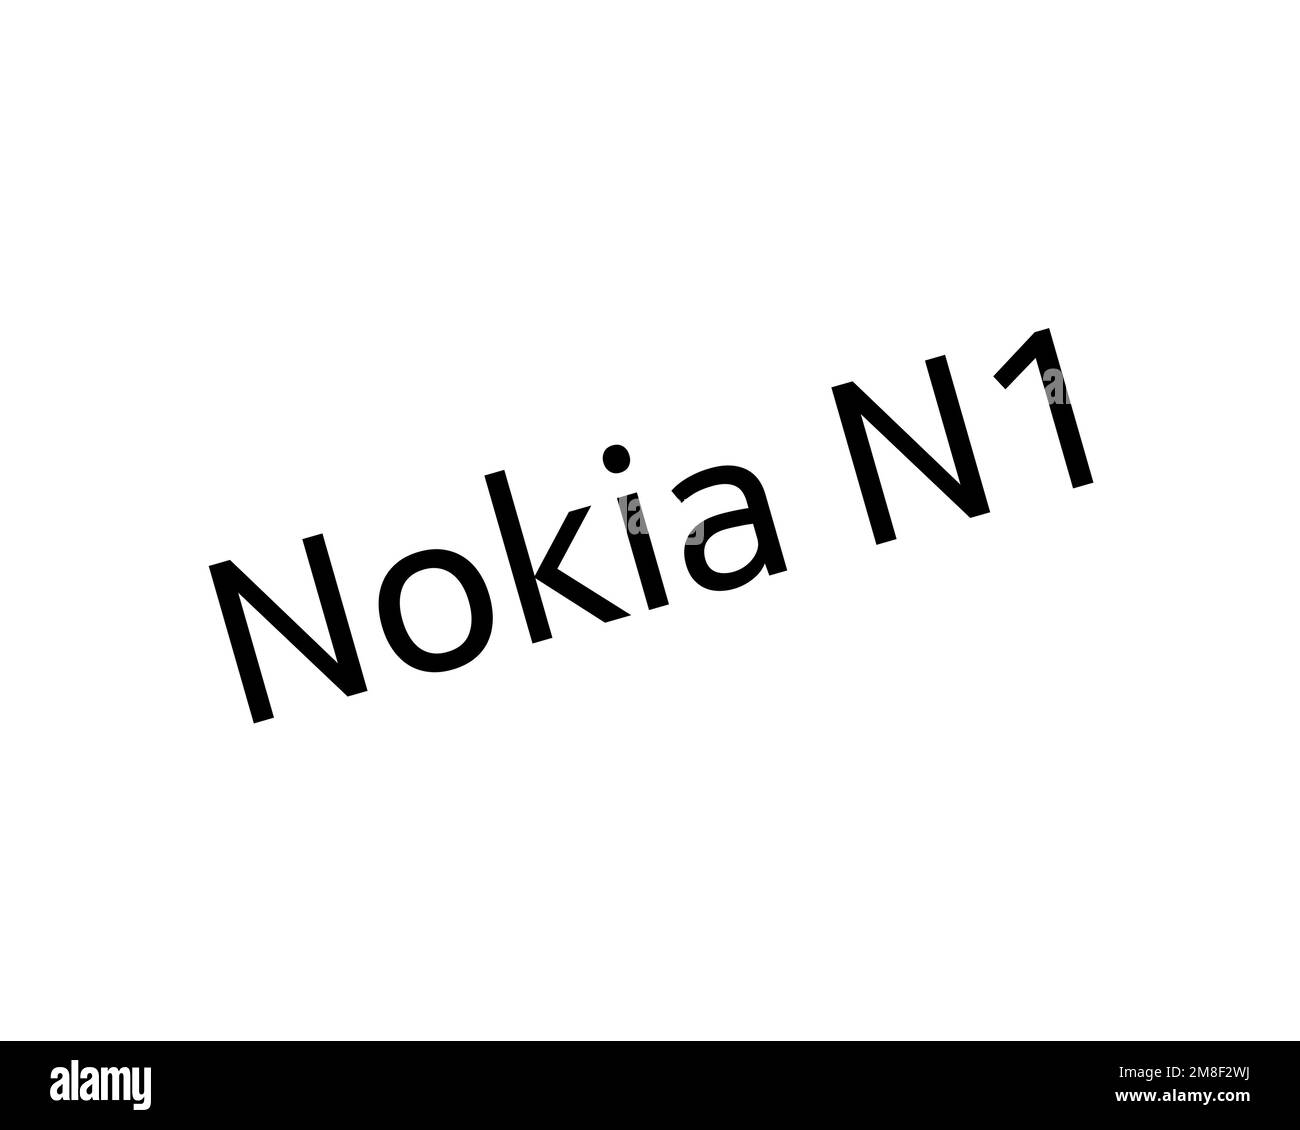 Nokia N1, logo ruotato, sfondo bianco Foto Stock